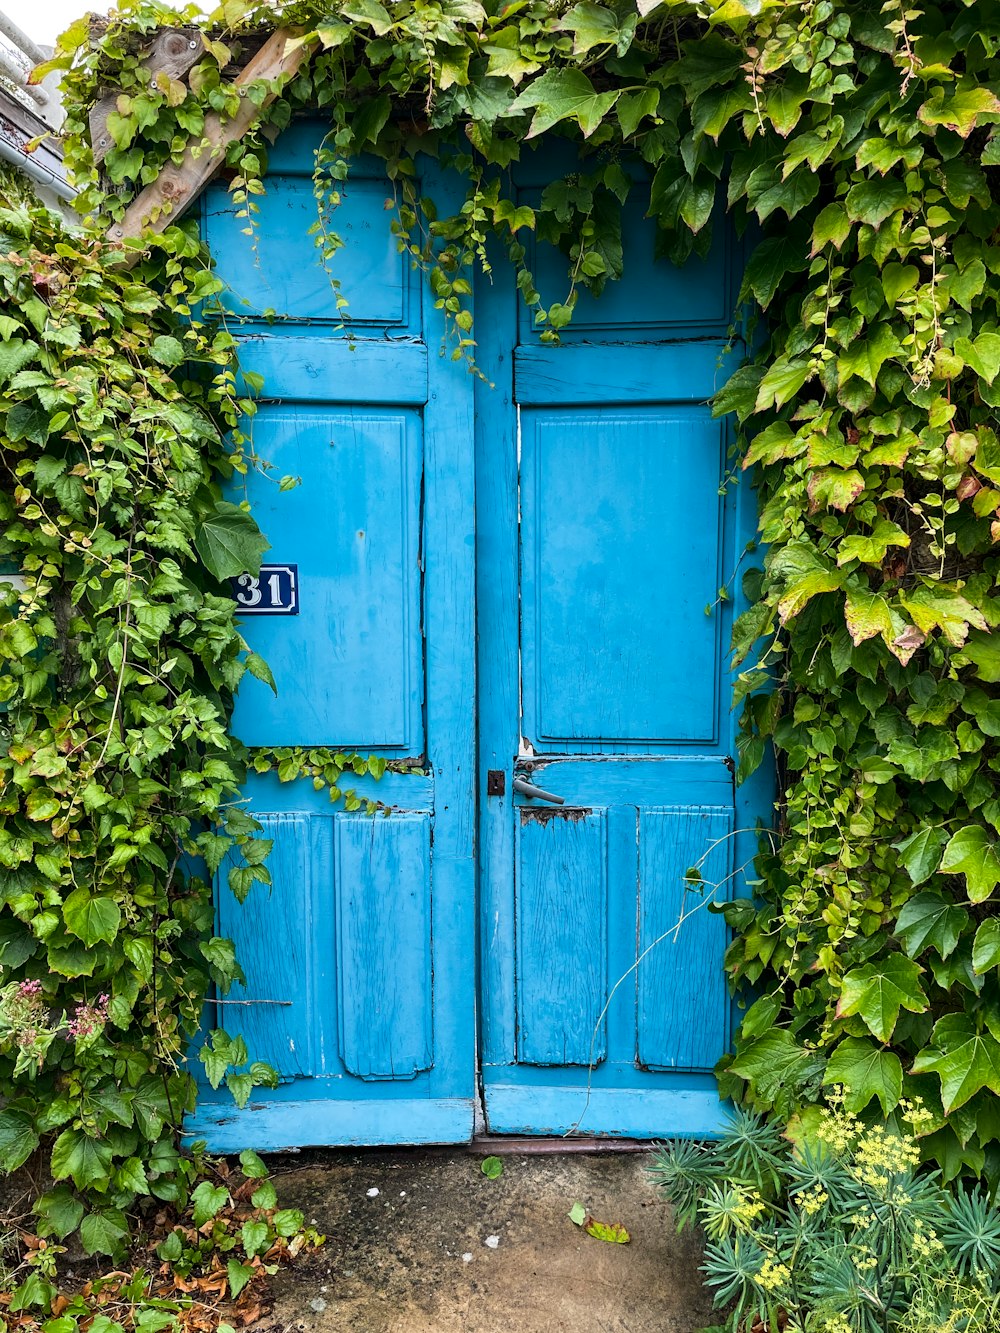 blue wooden door with green vines